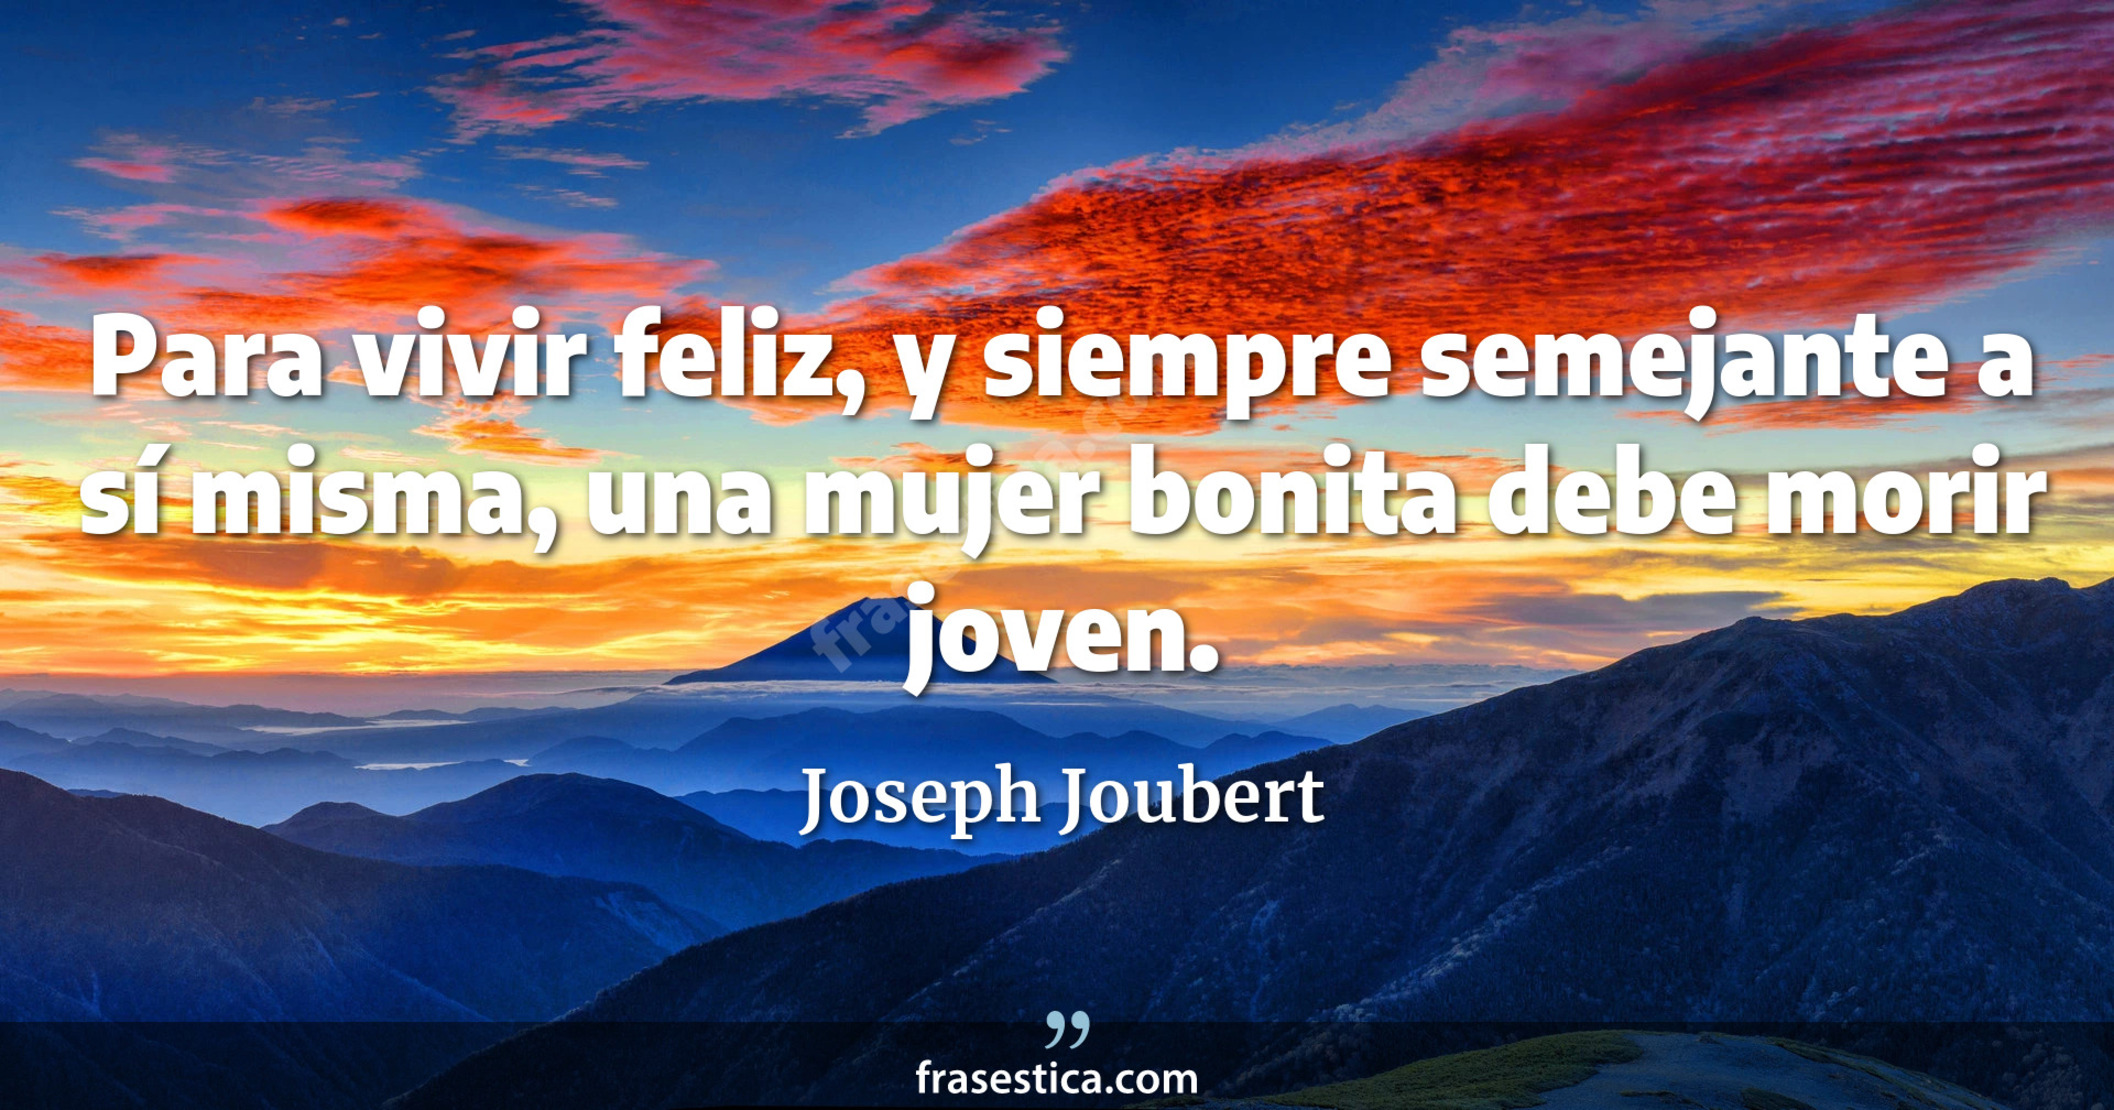 Para vivir feliz, y siempre semejante a sí misma, una mujer bonita debe morir joven. - Joseph Joubert